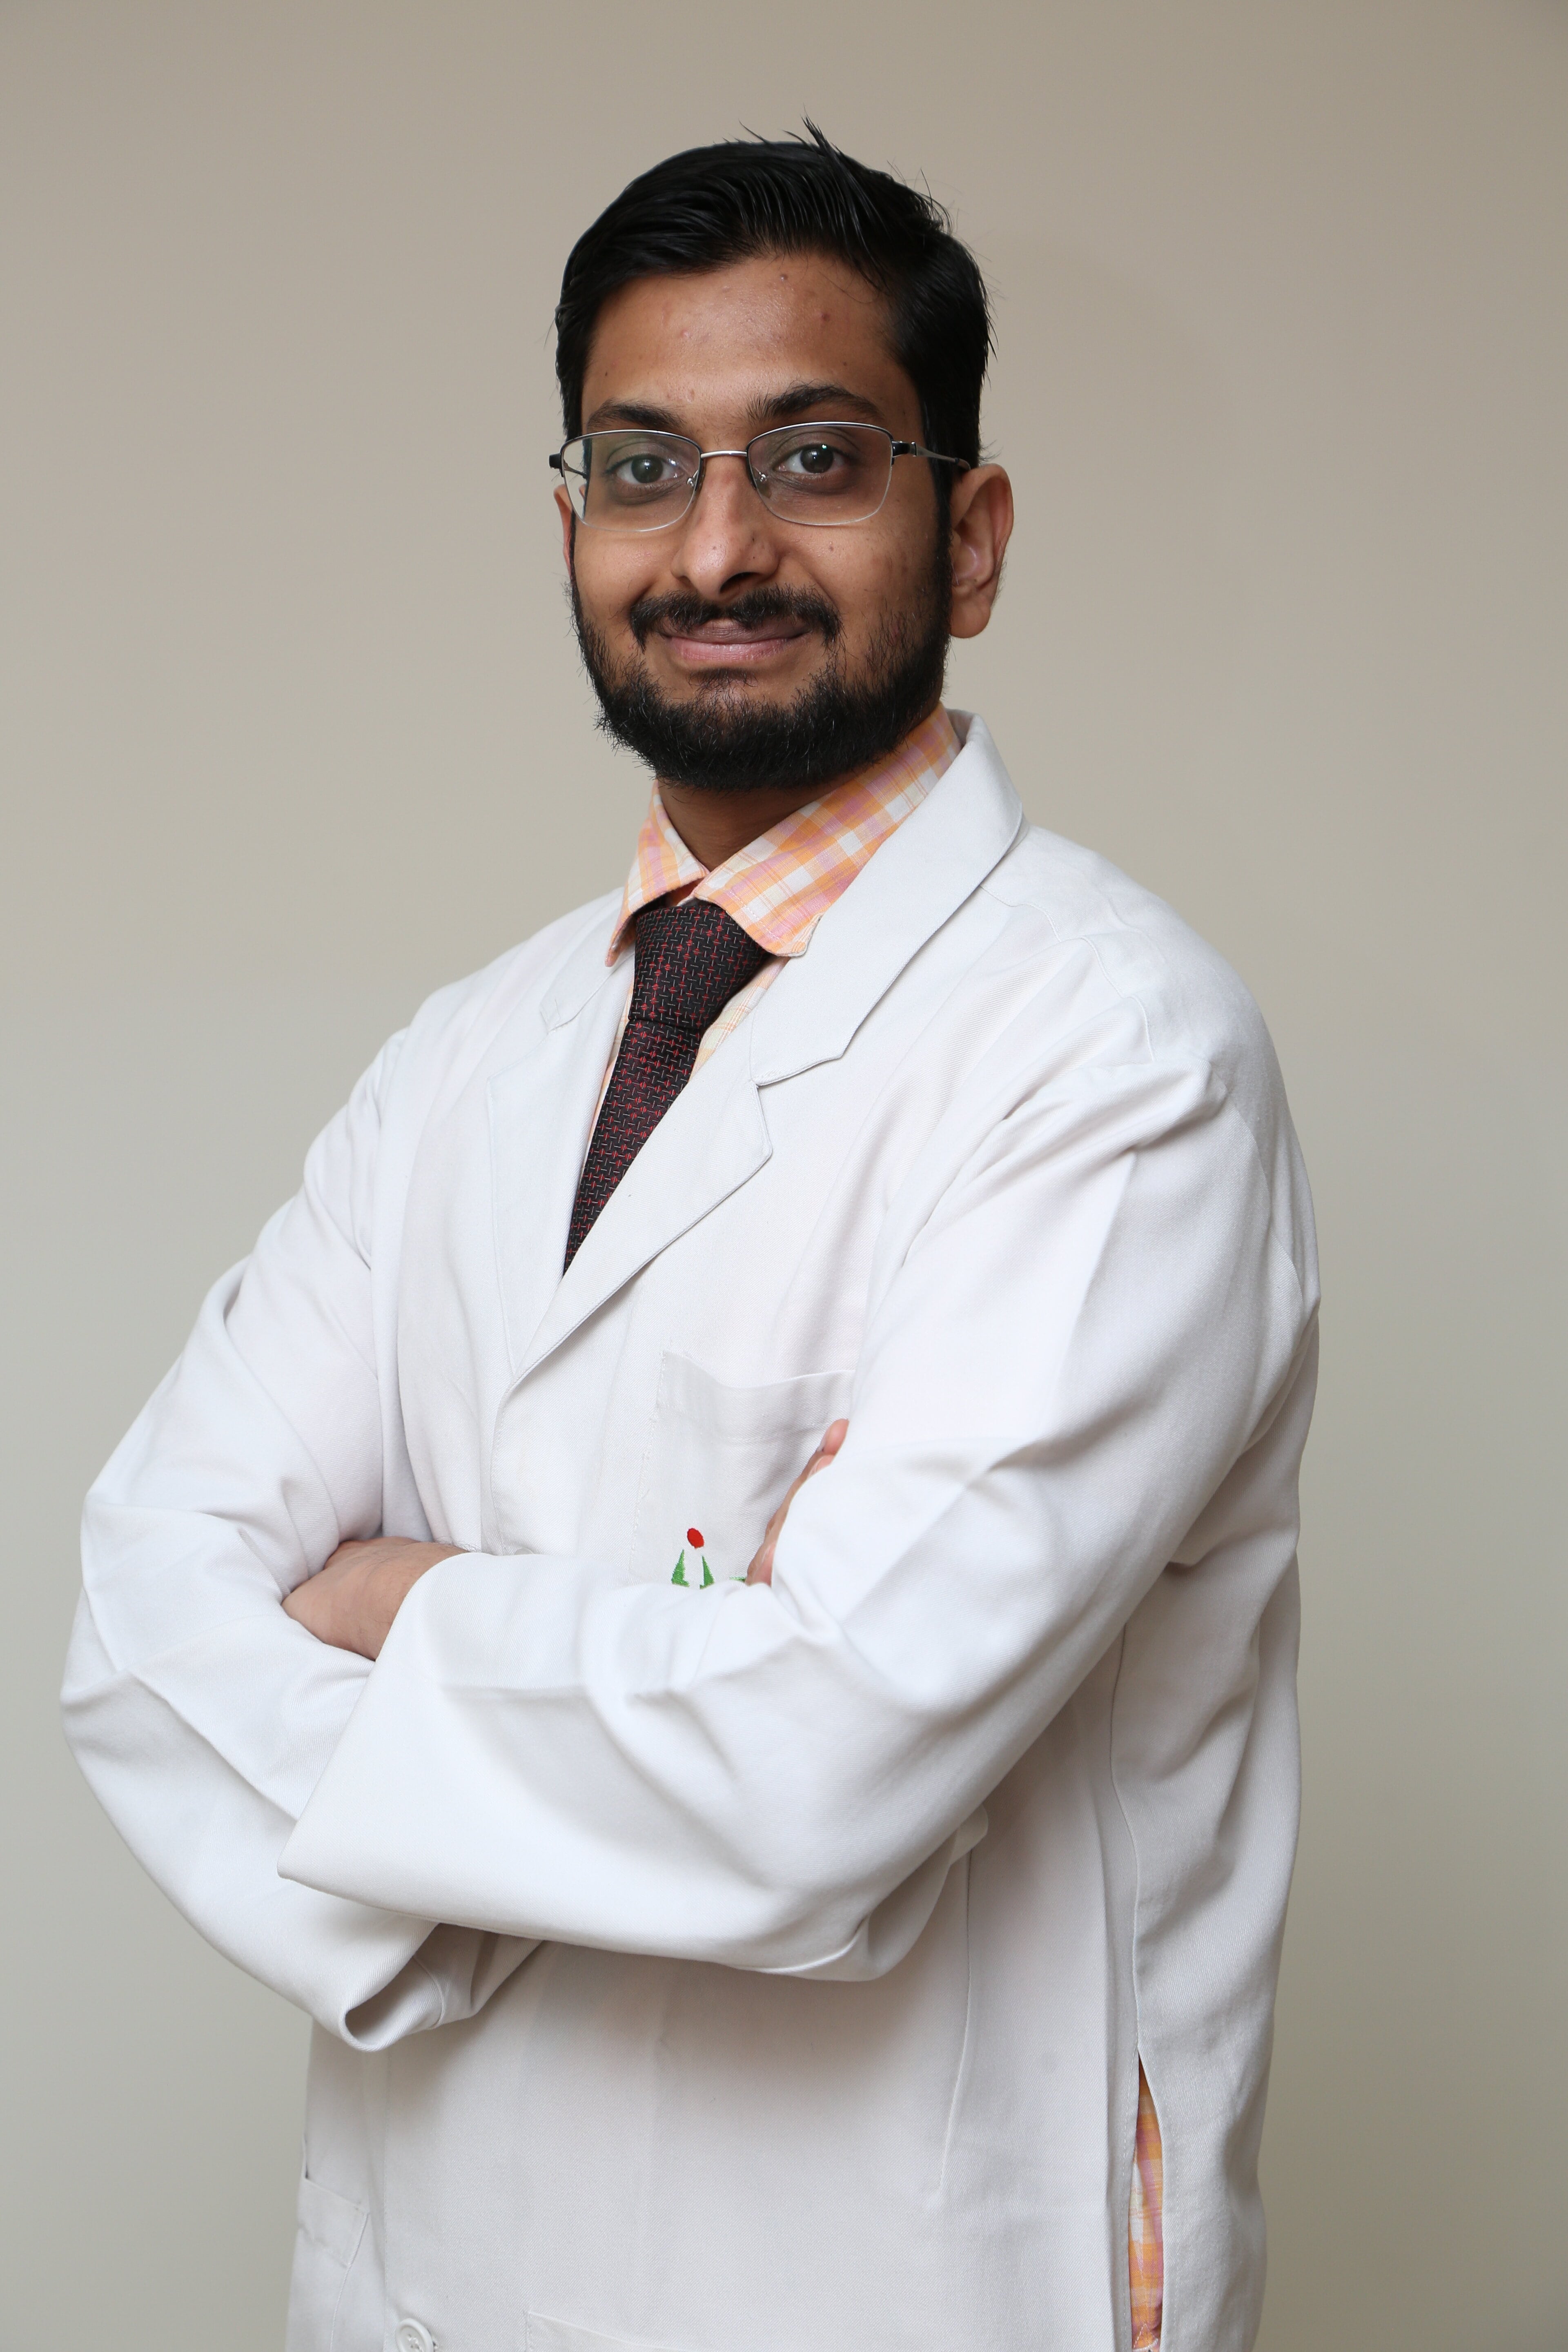 Dr. Akshay kumar Mangal